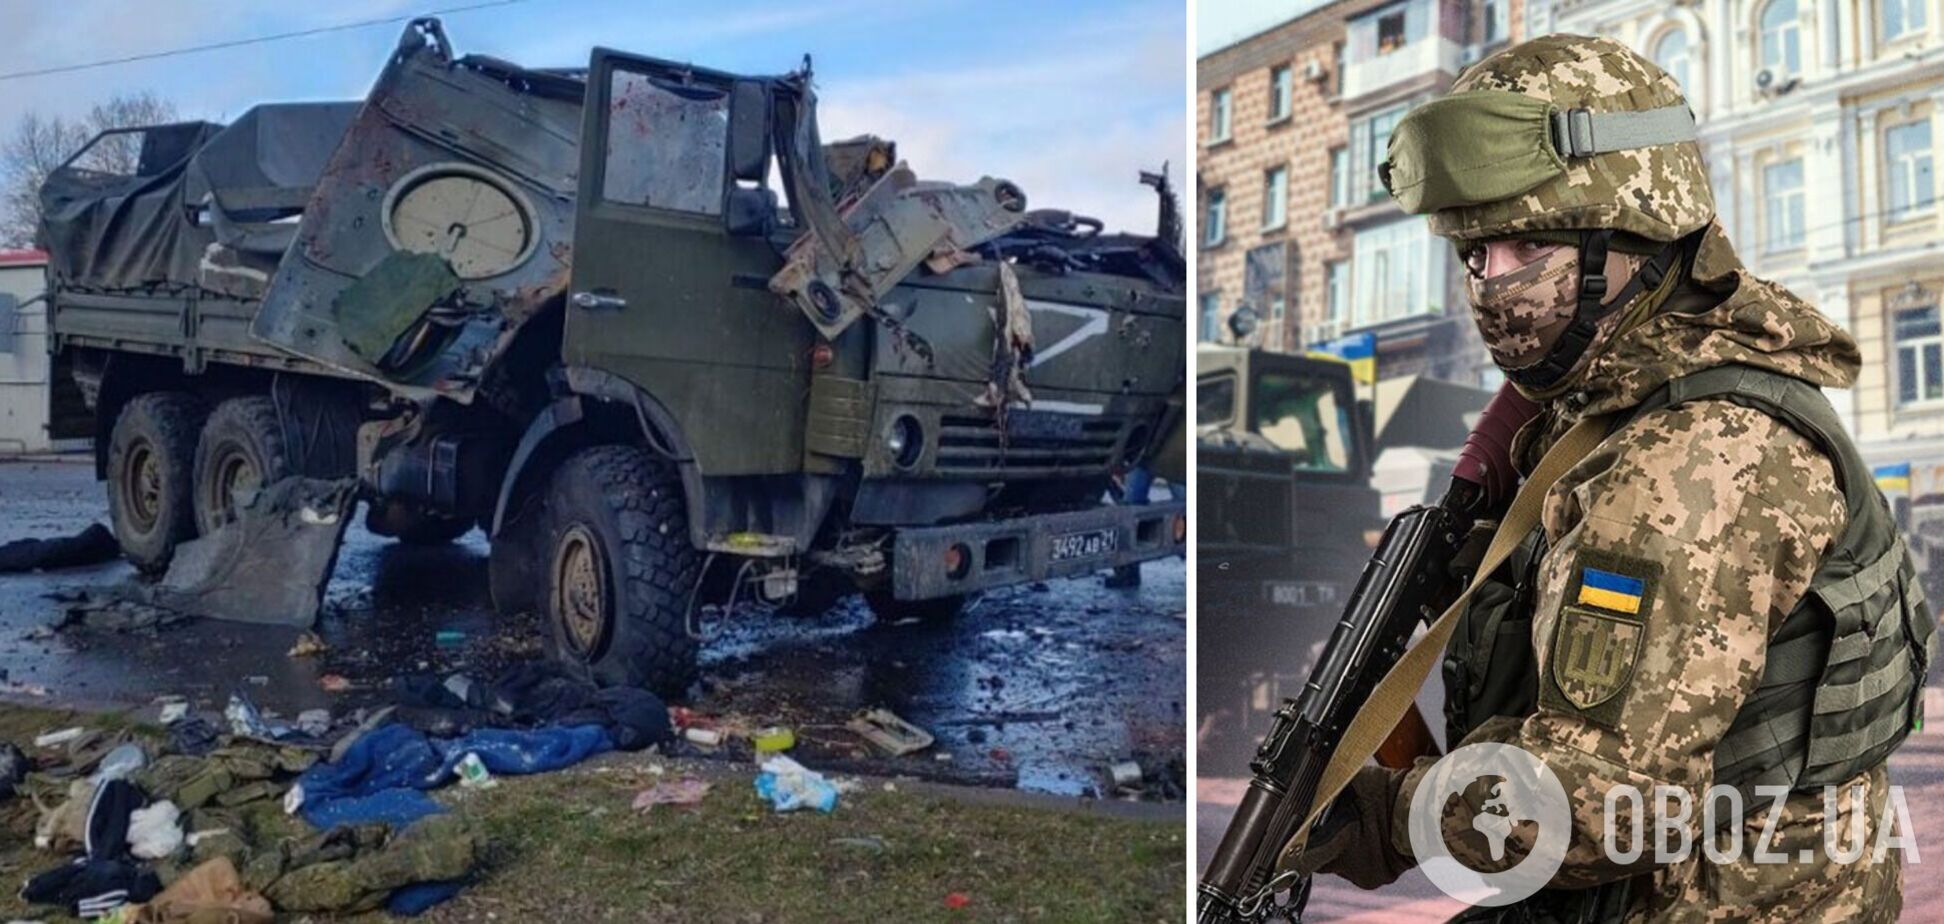 'Живем, как бомжи, боевого настроения никакого': оккупант пожаловался на 'окопные условия' в Украине. Аудиоперехват